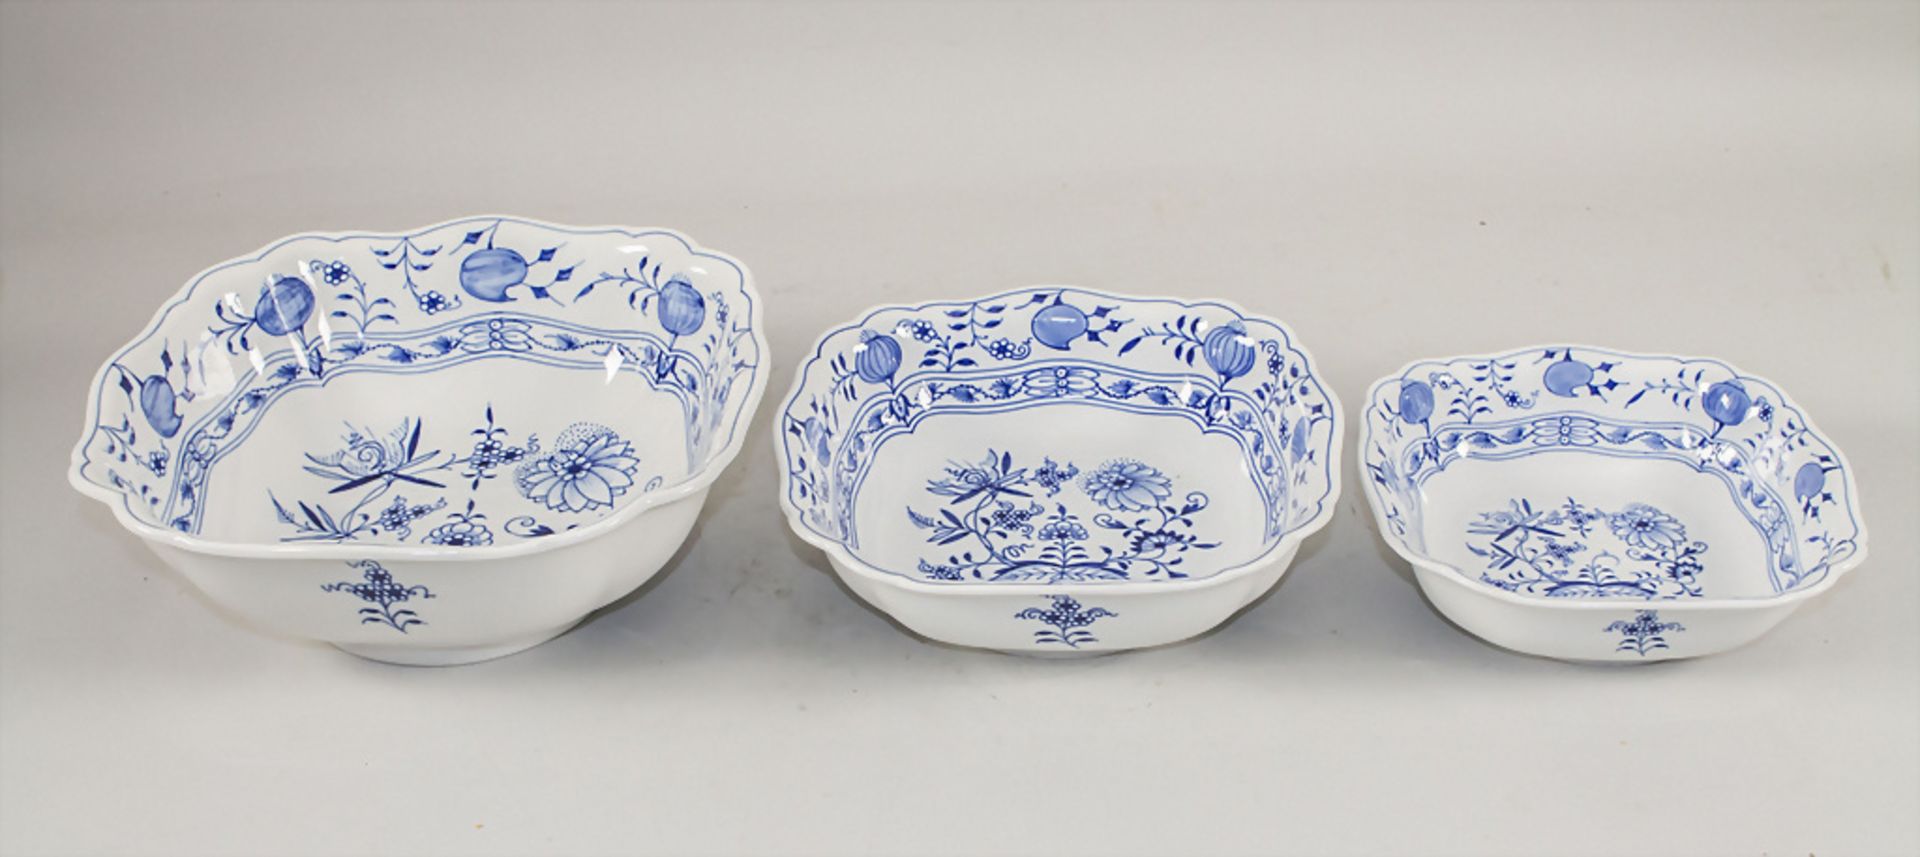 3 Schalen mit Zwiebelmuster / 3 bowls with onion pattern, Meissen, 2. Hälfte 20. Jh.